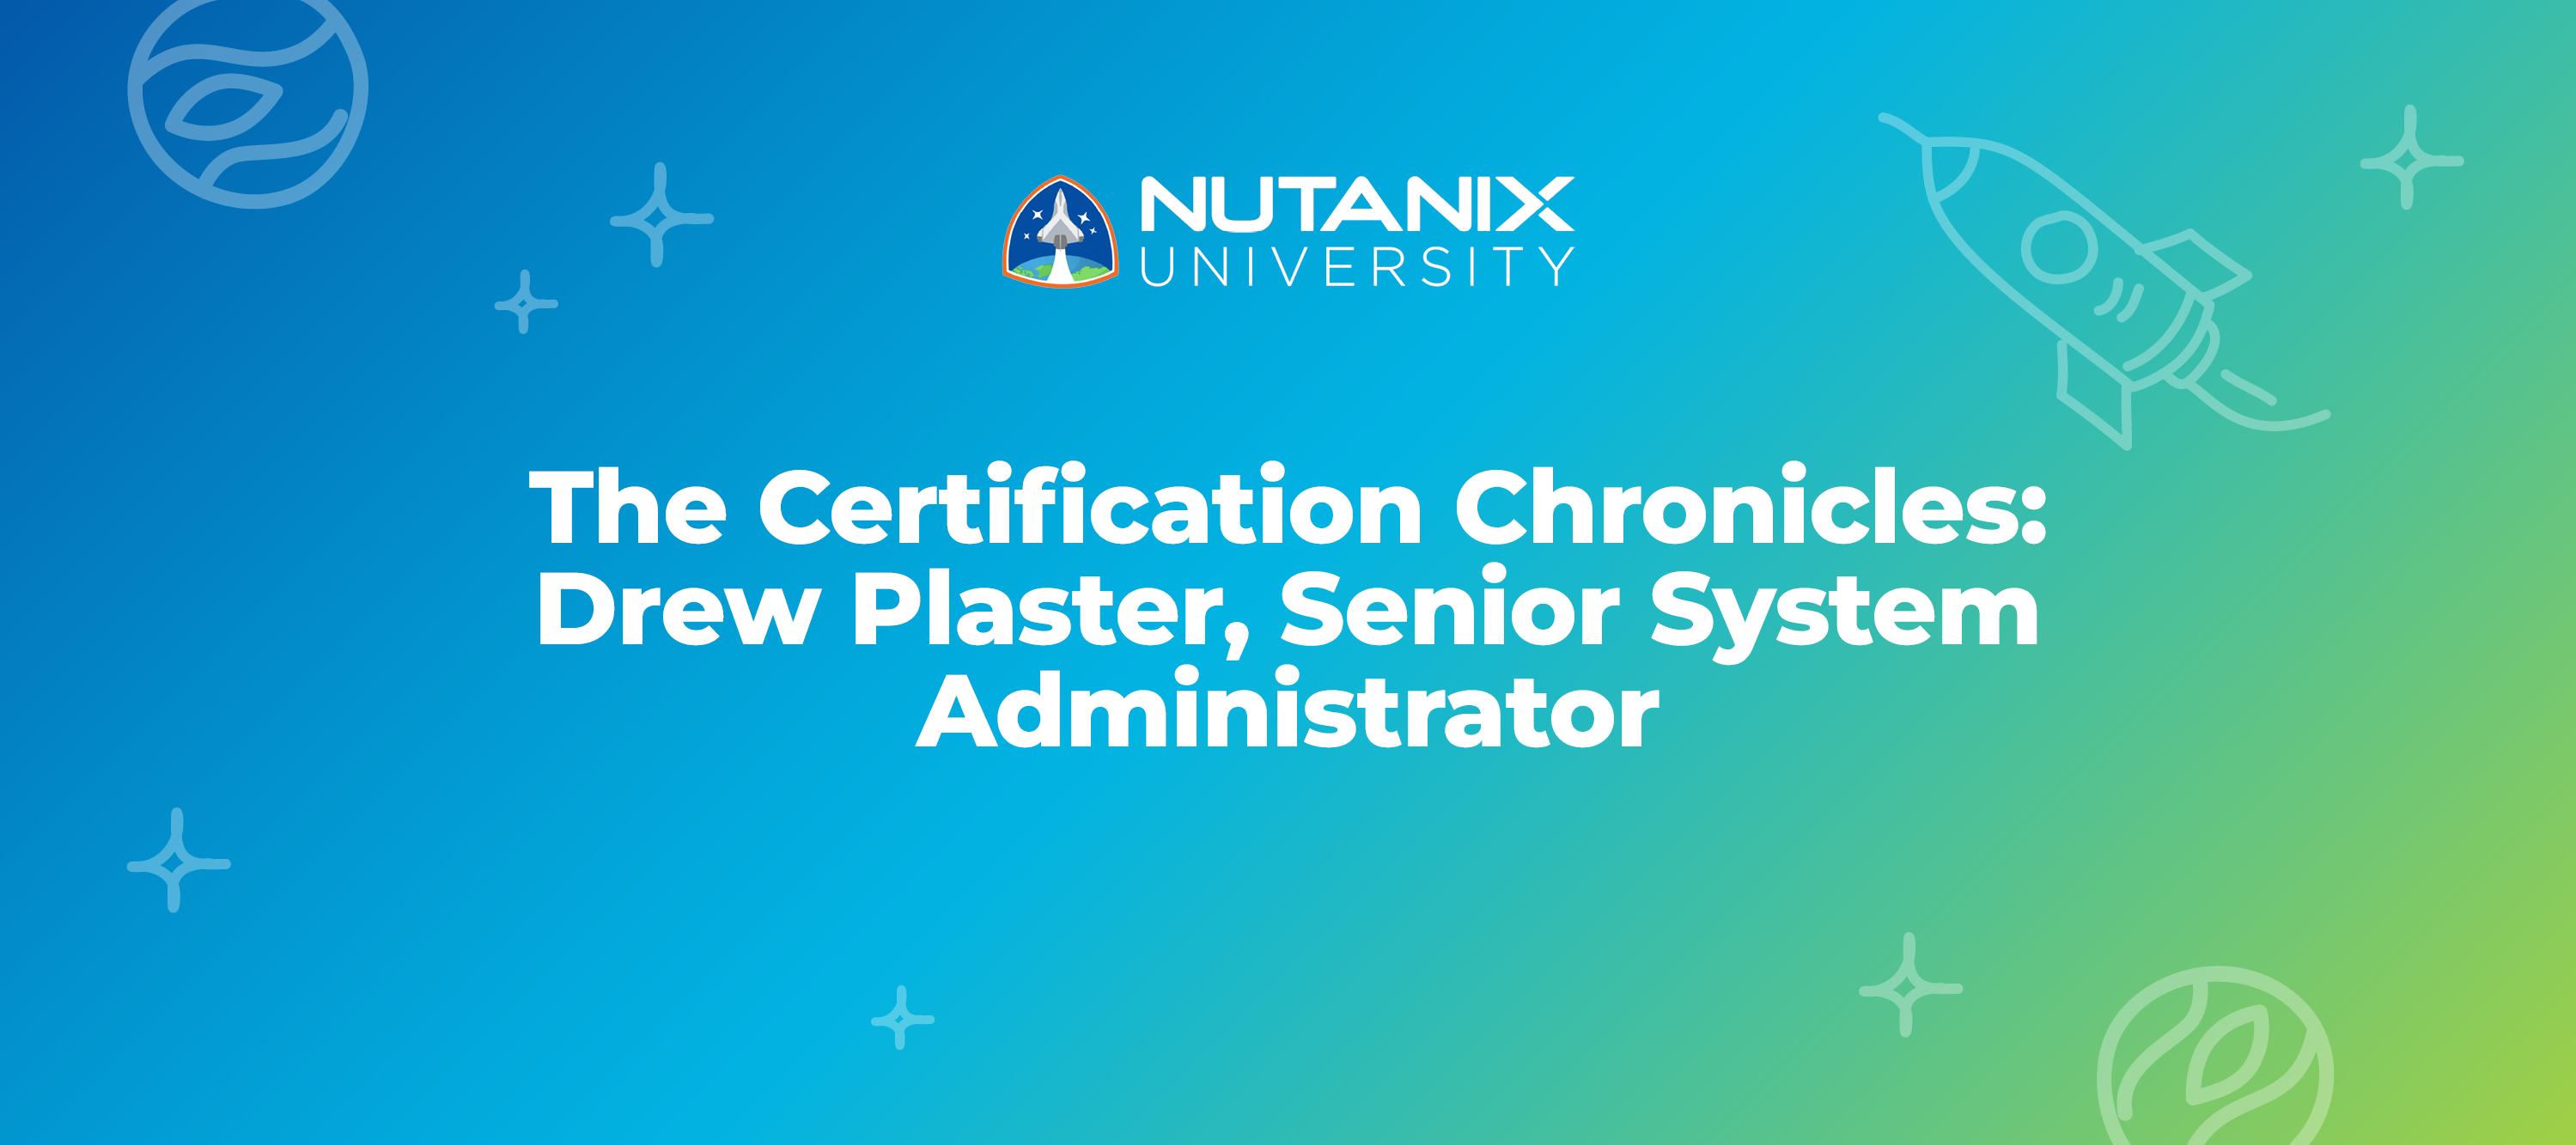 The Certification Chronicles: Drew Plaster, Senior System Administrator